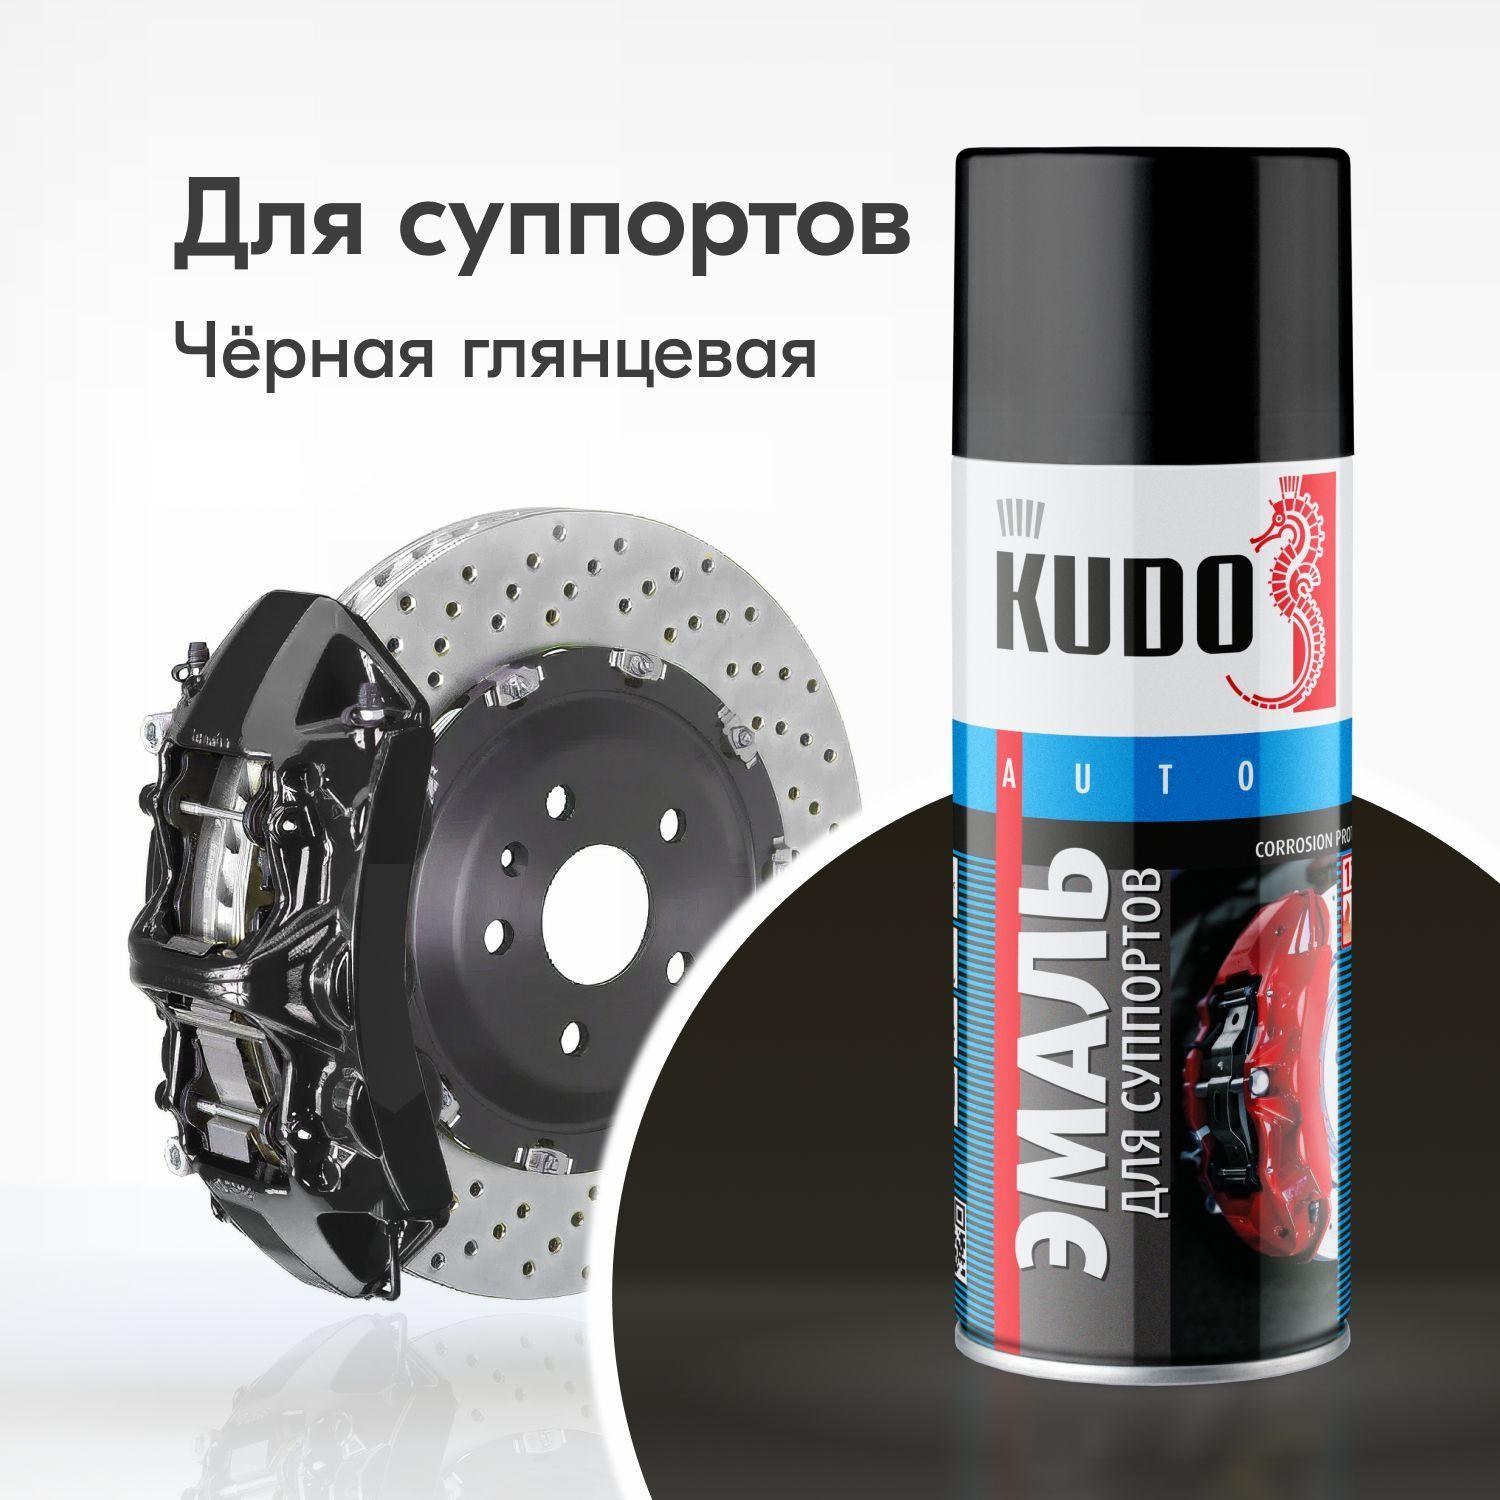 Эмаль для суппортов KUDO чёрная, глянцевая, краска термостойкая высокопрочная, 520 мл